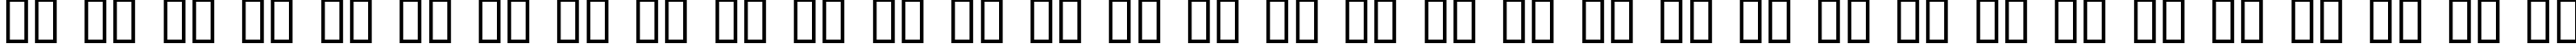 Пример написания русского алфавита шрифтом Coaster Black